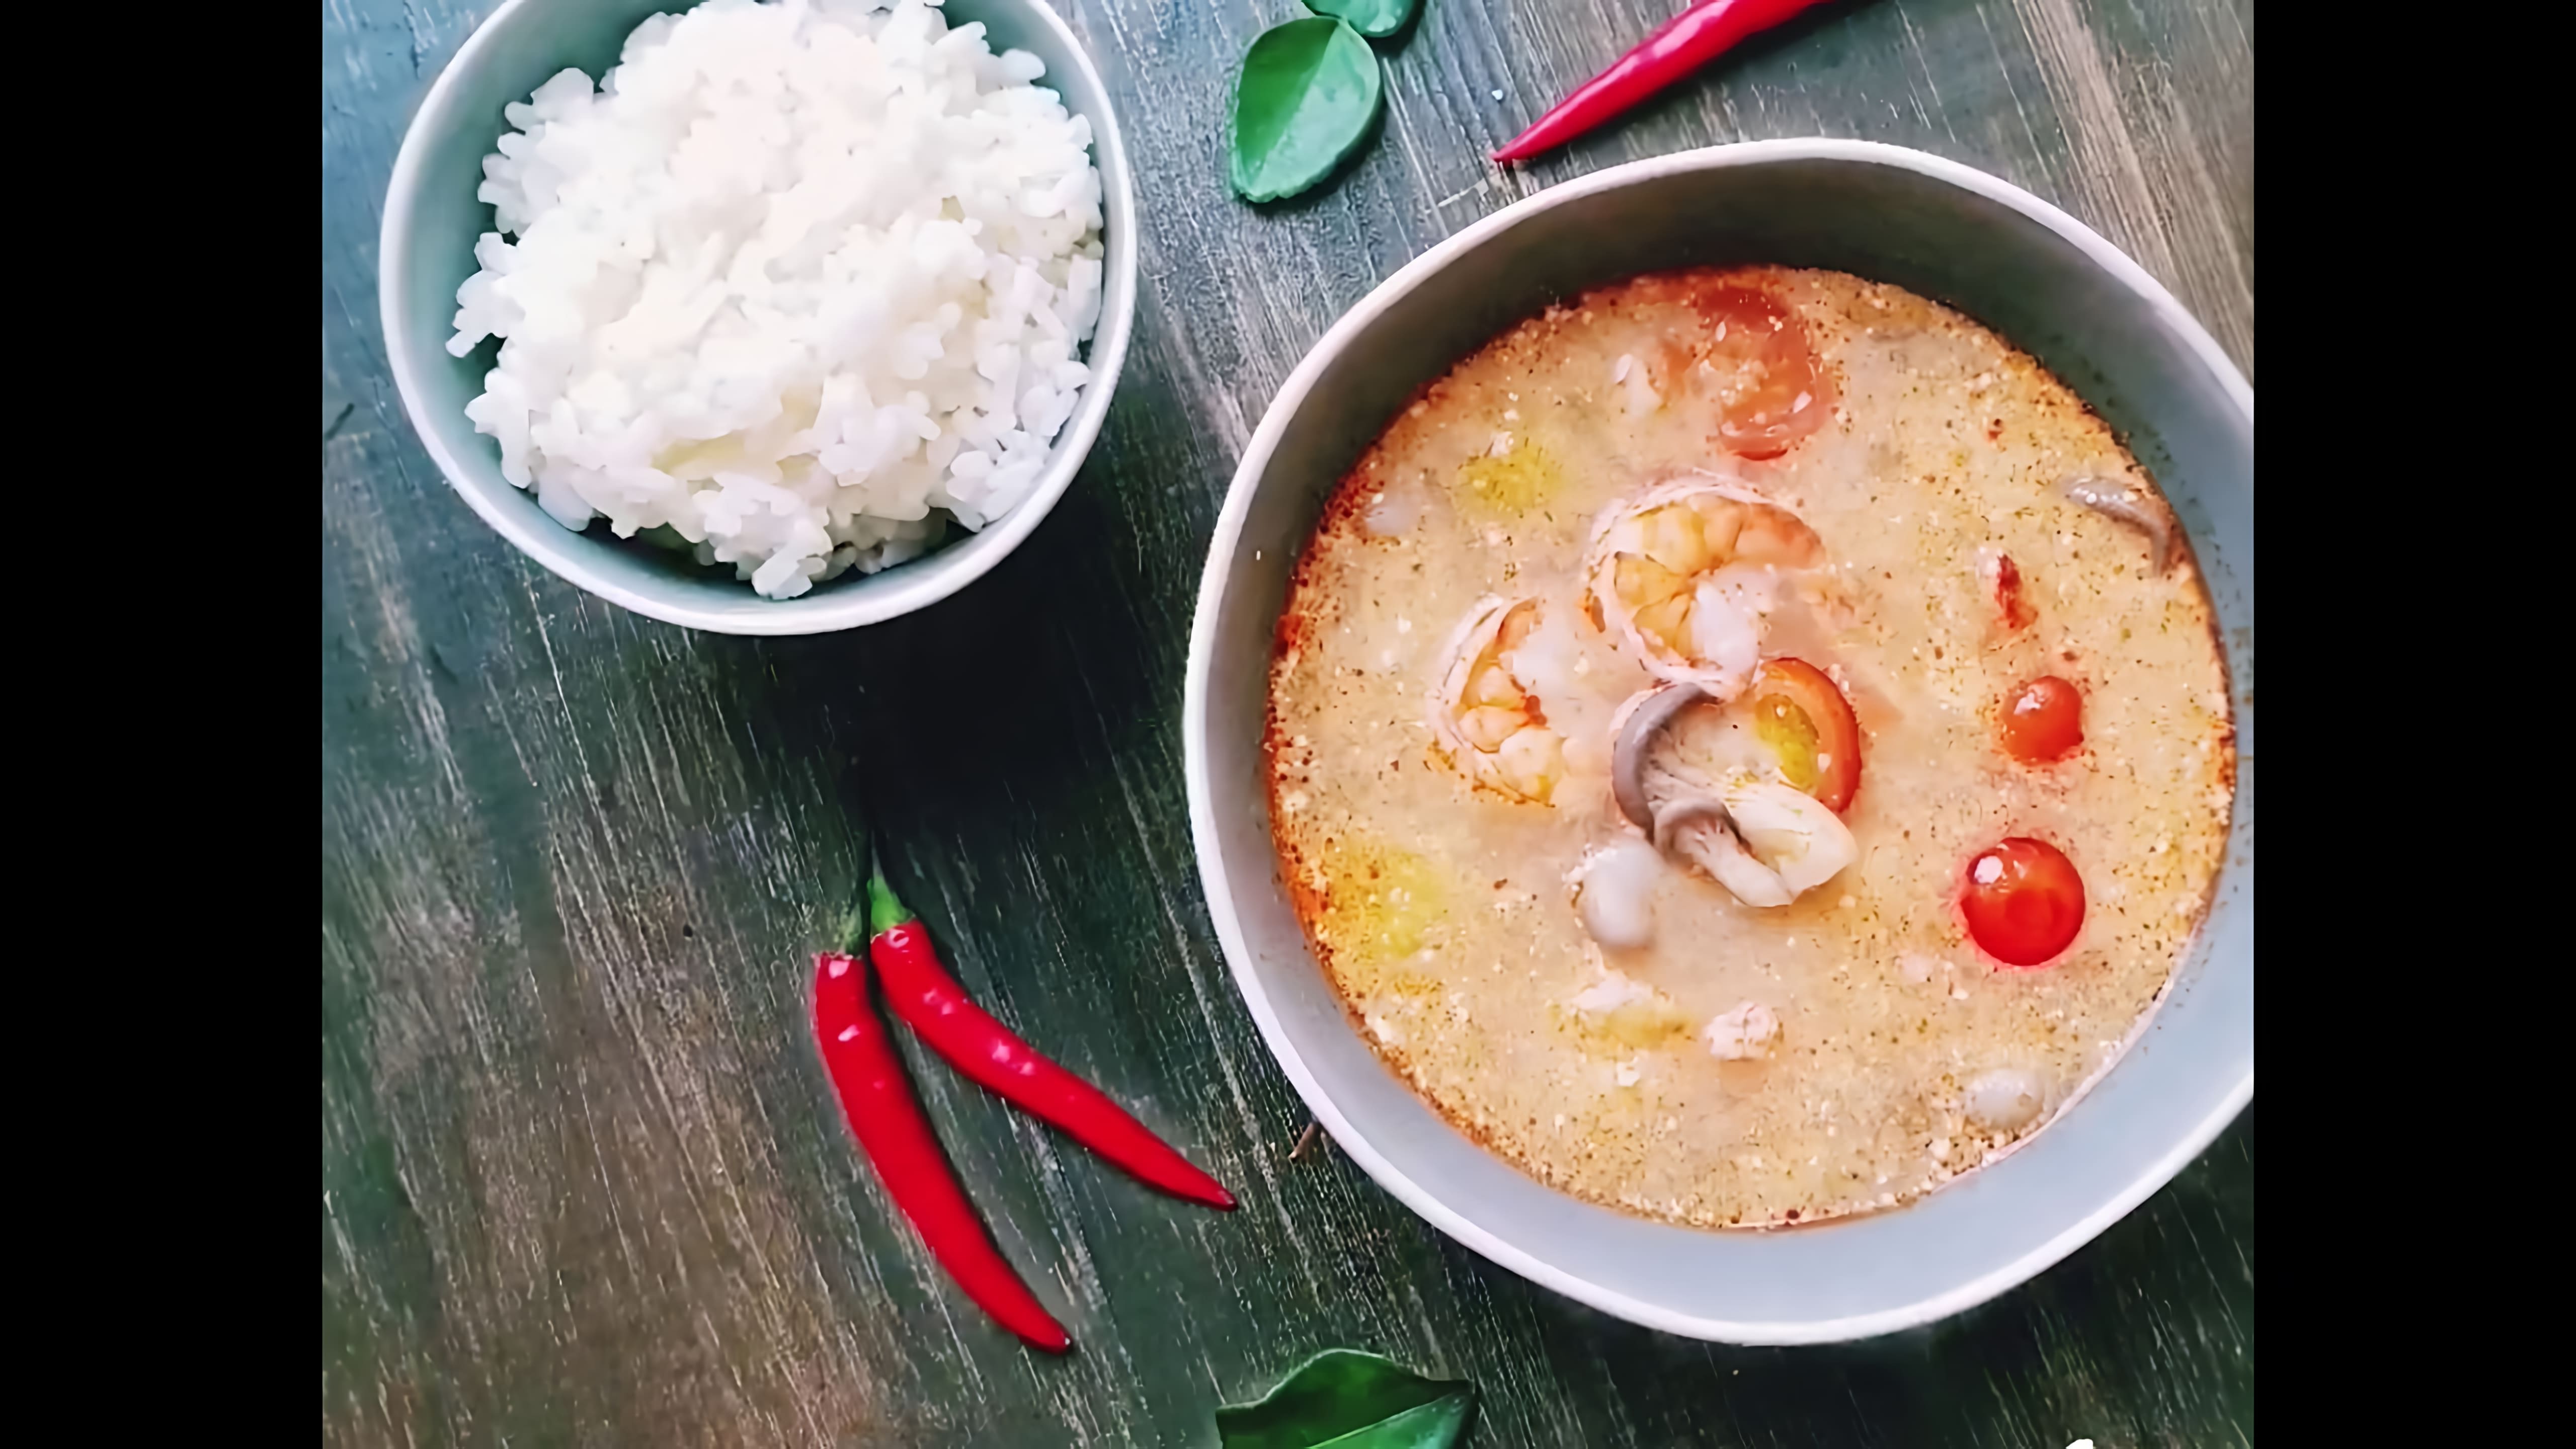 В этом видео демонстрируется процесс приготовления традиционного тайского супа "Том Ям" с креветками